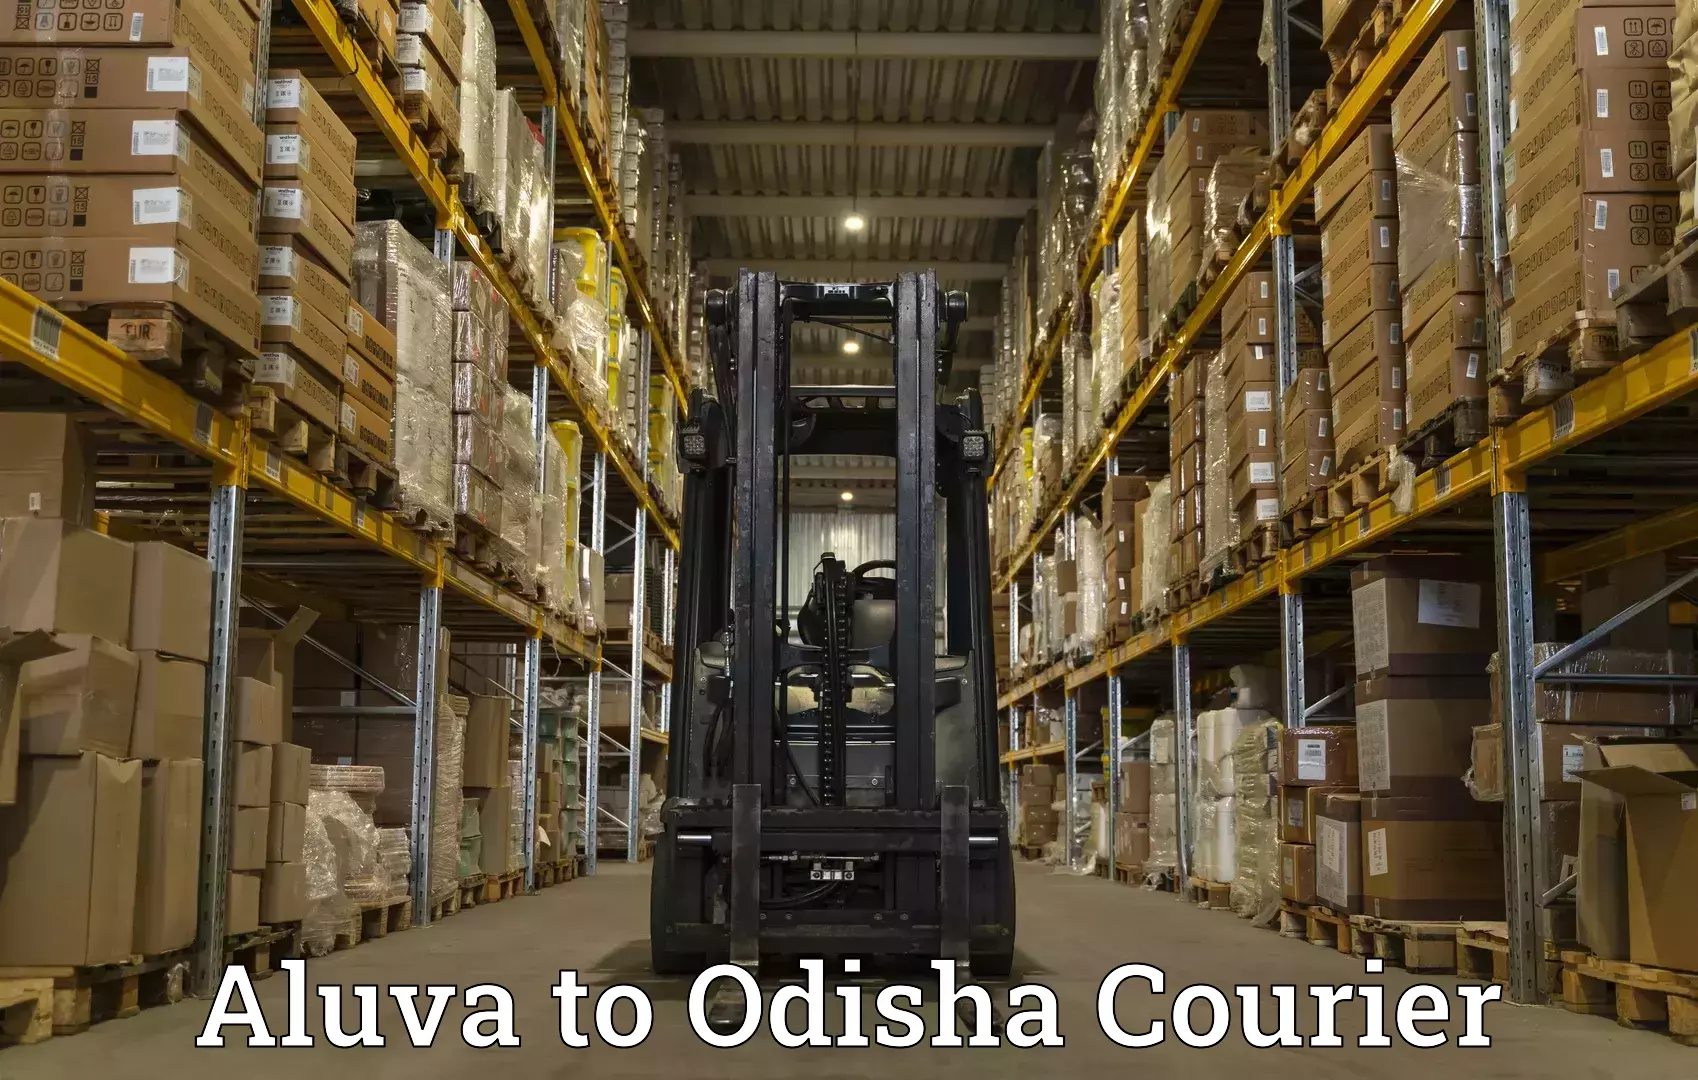 Efficient order fulfillment Aluva to Sukinda